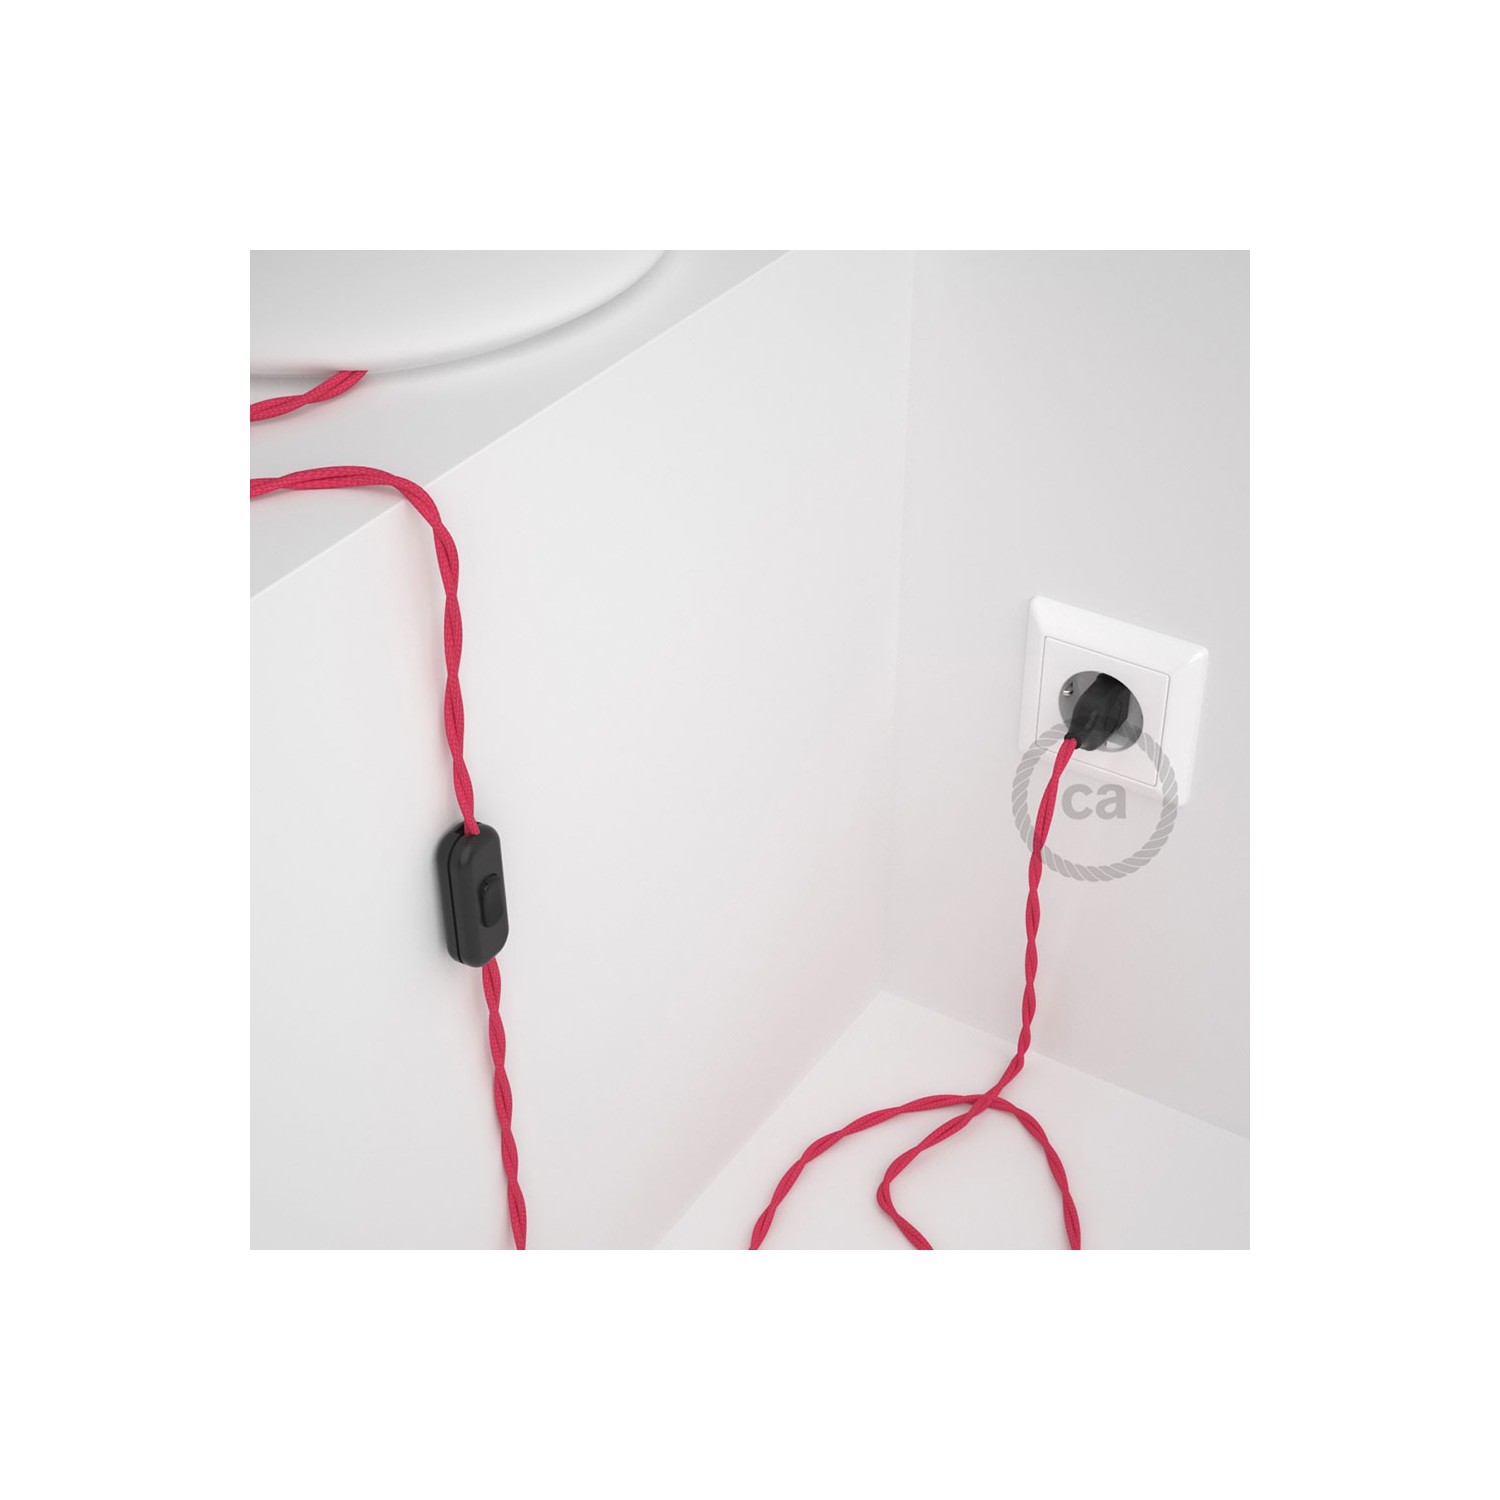 Cordon pour lampe, câble TM08 Effet Soie Fuchsia 1,80 m. Choisissez la couleur de la fiche et de l'interrupteur!